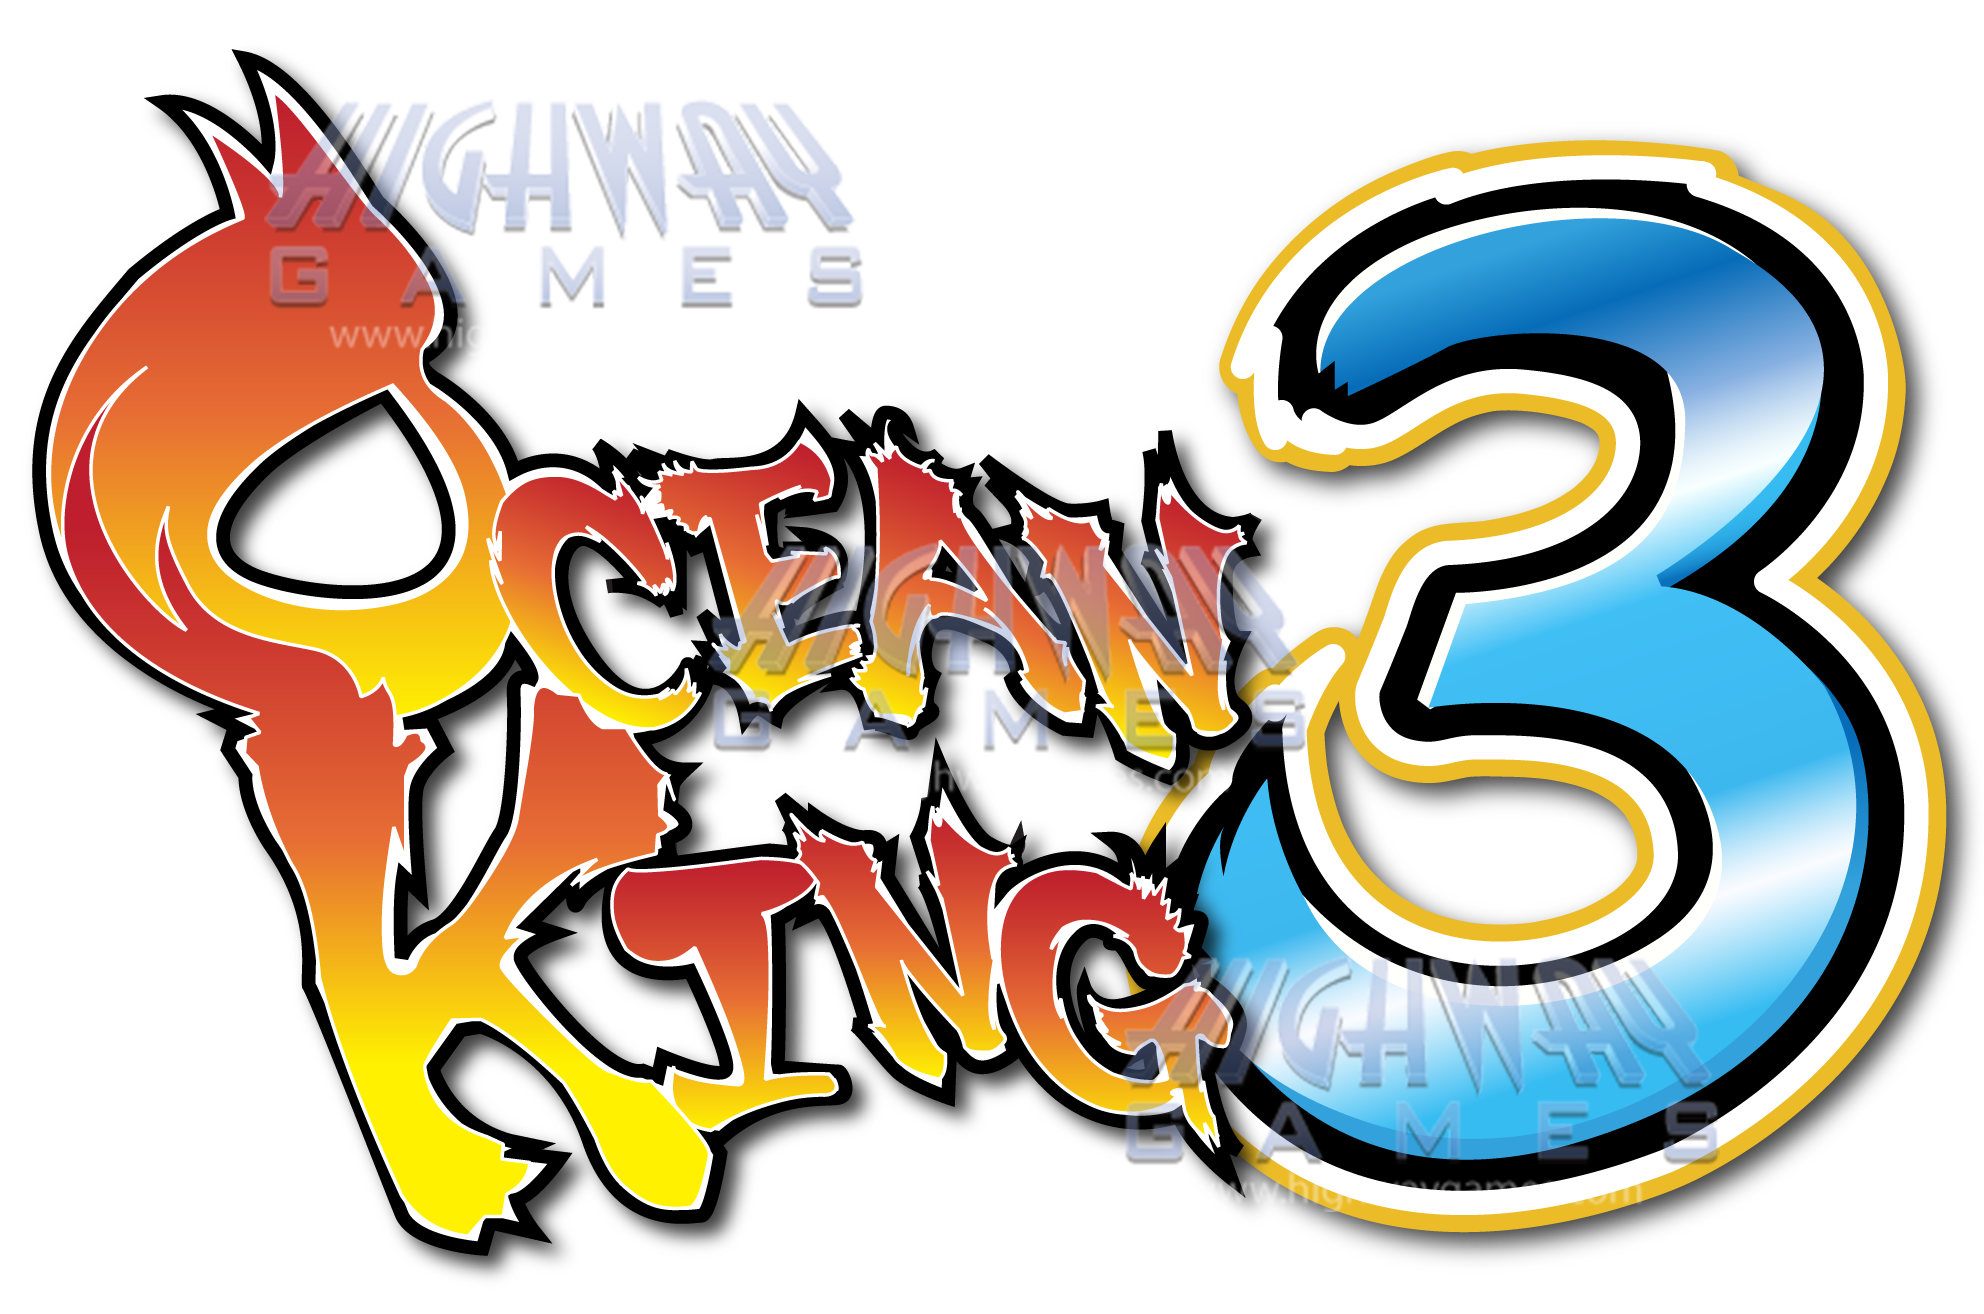 ocean king 2 golden legend download